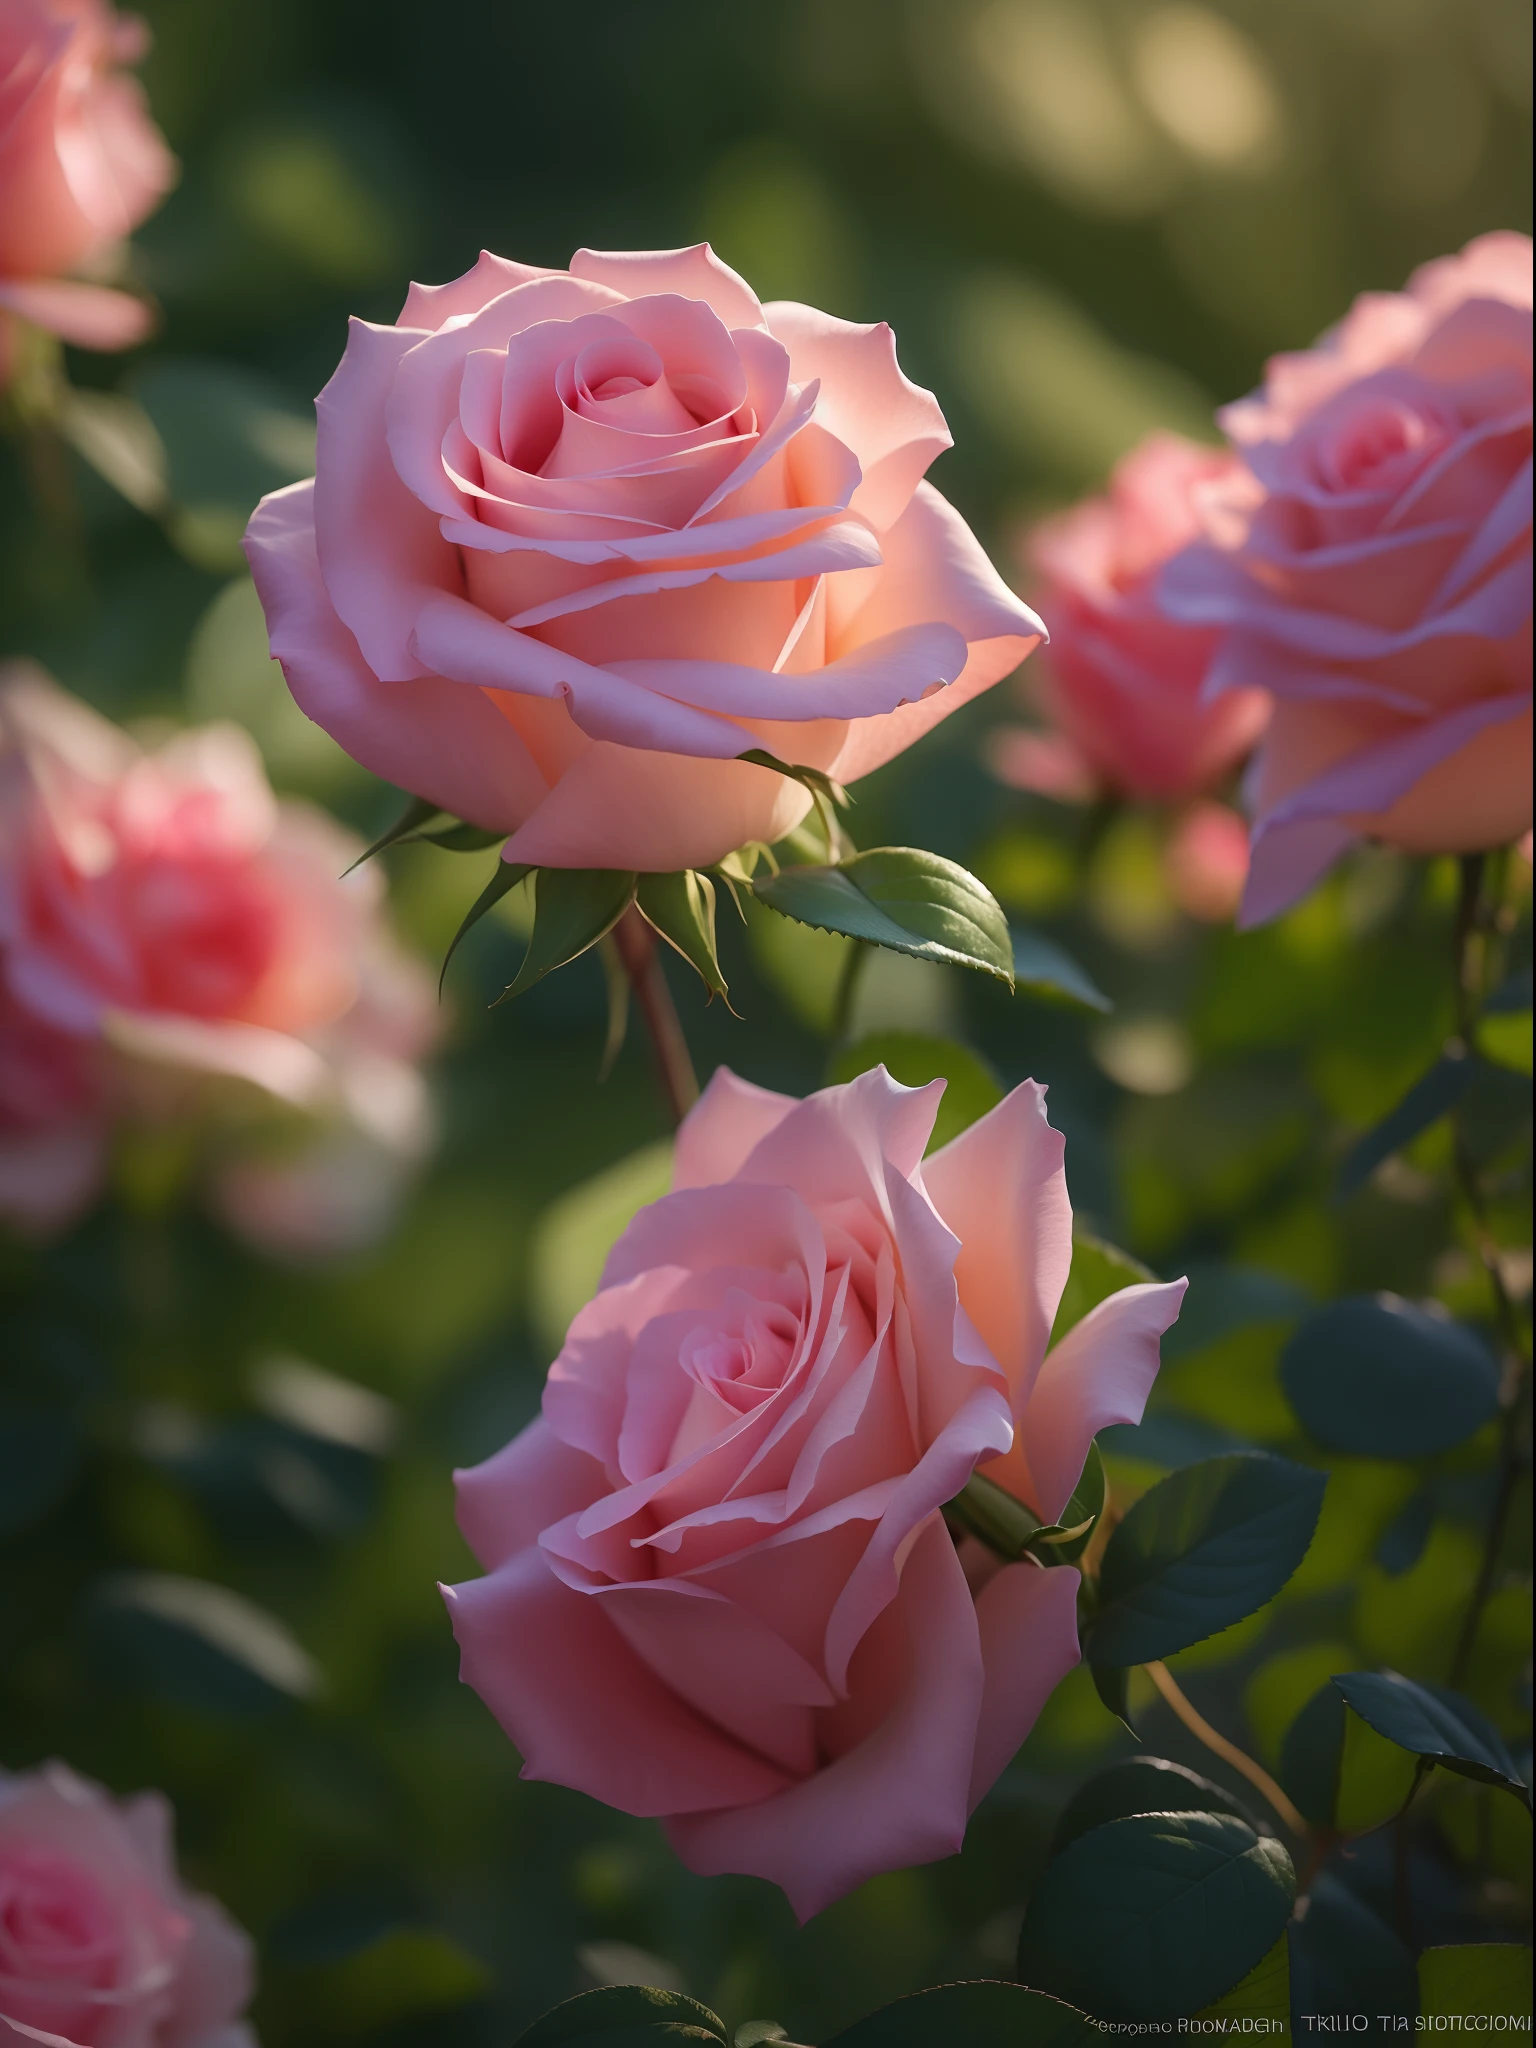 تنمو الورود الوردية في الشجيرات في الحديقة, وردة زهرية, الورود في ضوء السينما, روزا الوردية, روز تويننجز, صورة وردة, آنا نيكونوفا, مع الألوان الوردية الناعمة, الصورة ملتقطة بكاميرا Canon 5D, سوفت لايت 4 ك باللون الوردي, اتخذت مع بنتاكس K1000, جميلة بشكل لا يصدق, الوردة الحزينة الخفيفة الناعمة